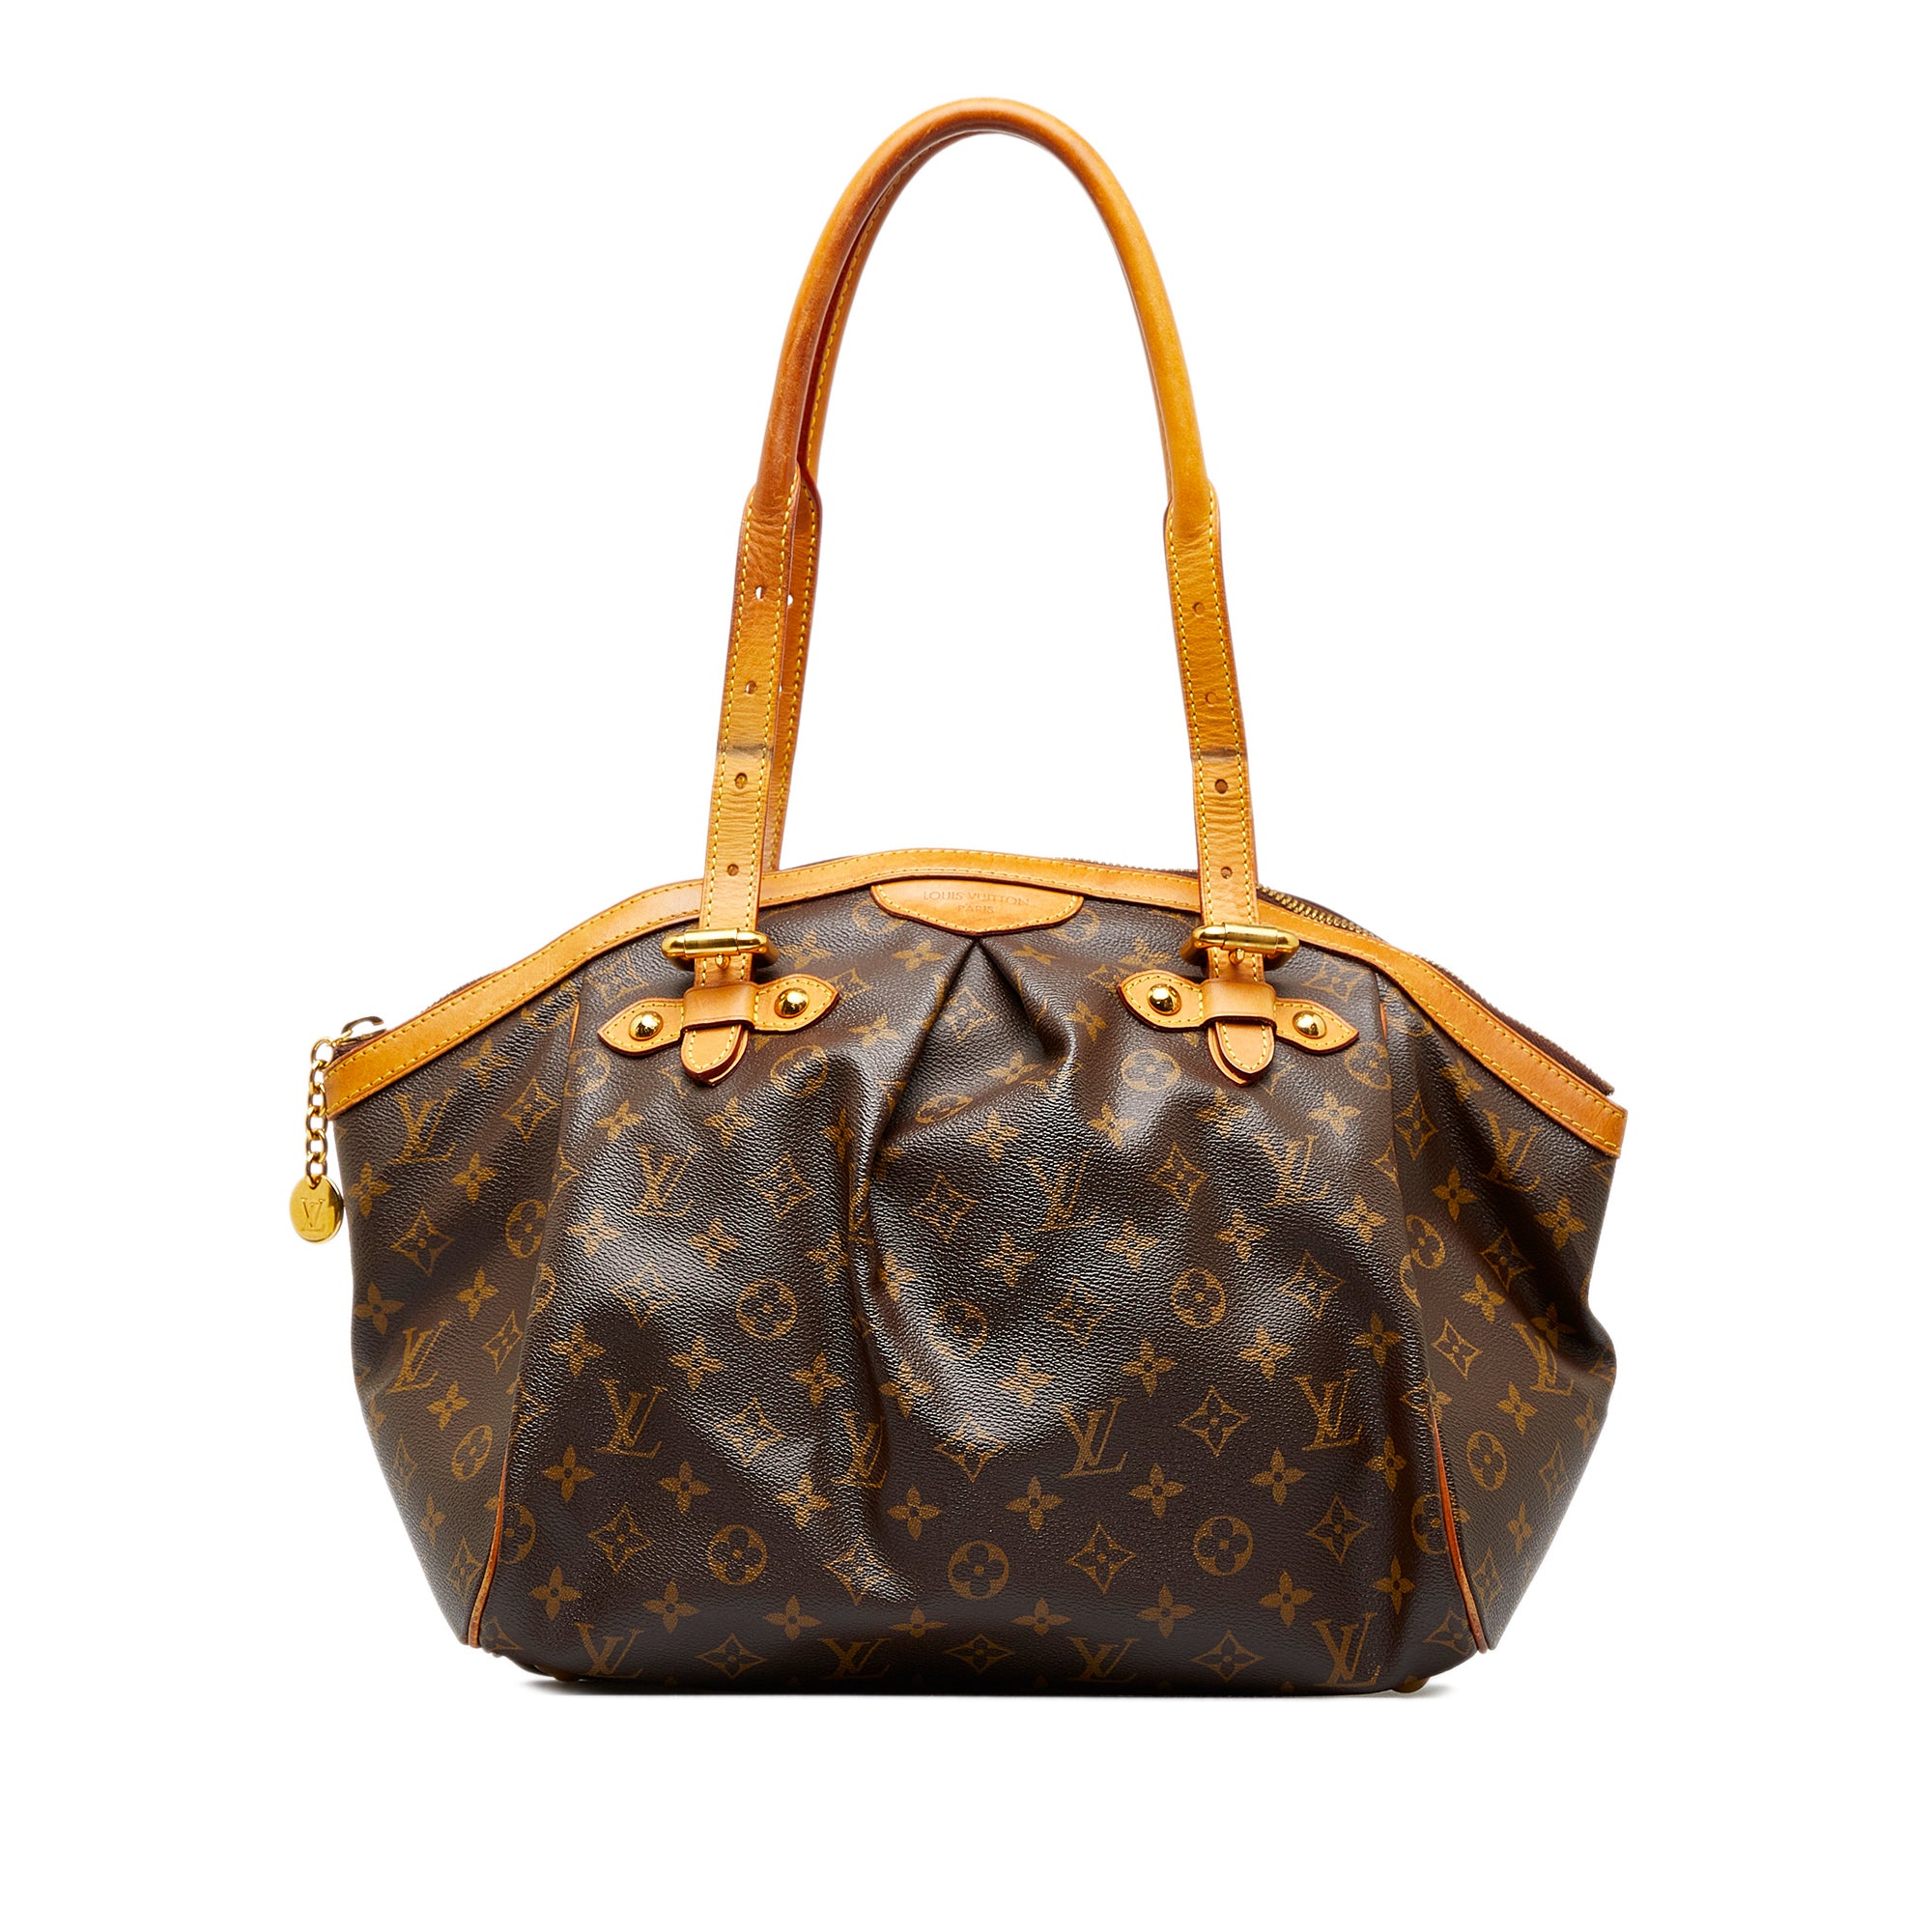 Louis Vuitton Tivoli Handbag